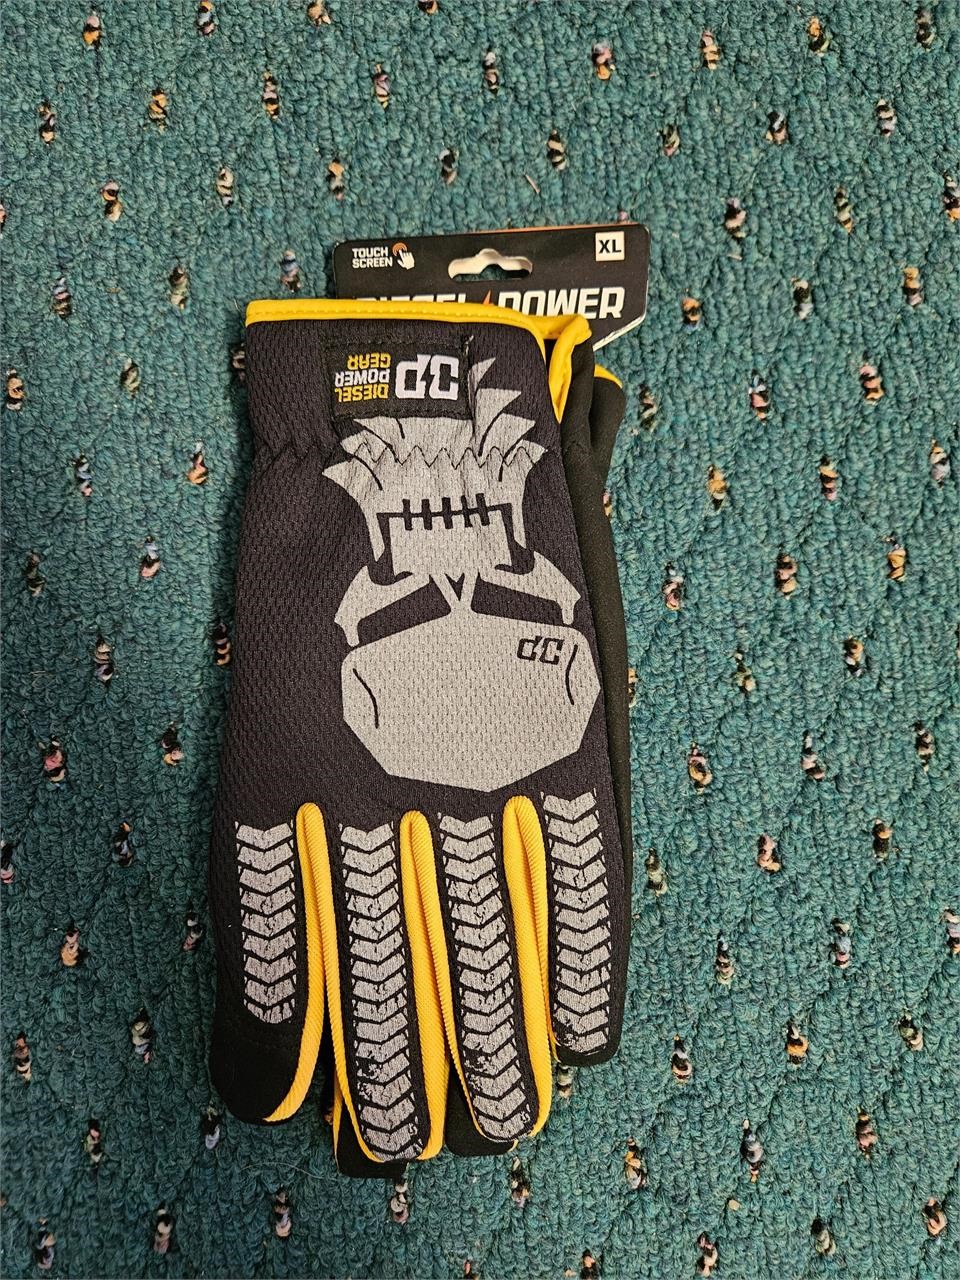 Diesel Power Gear Gloves Size XL NEW